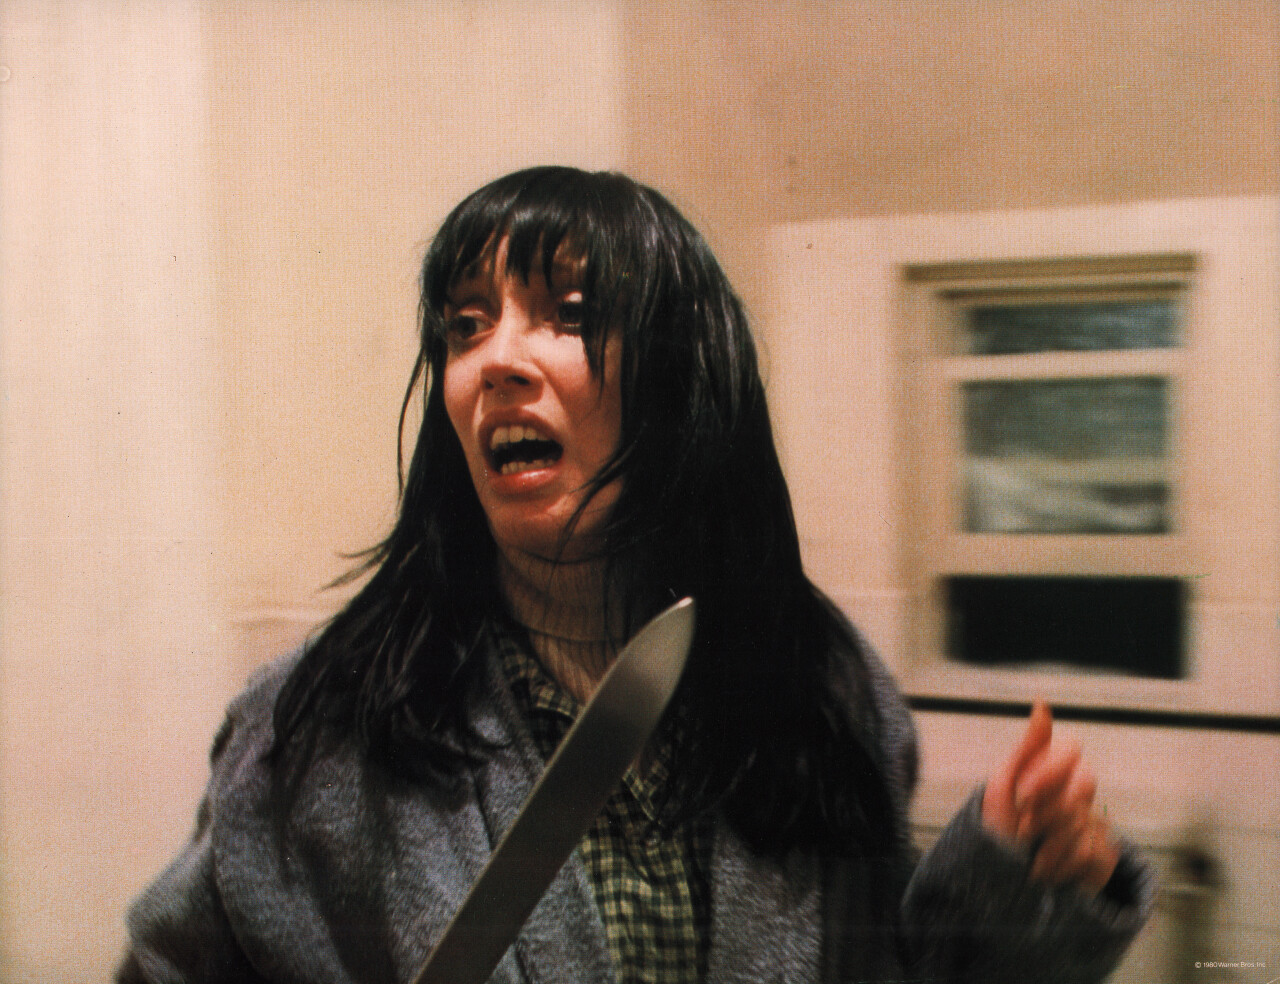 Сияние (The Shining, 1980), режиссёр Стэнли Кубрик, американский постер к фильму (ужасы, 1980 год) (1)